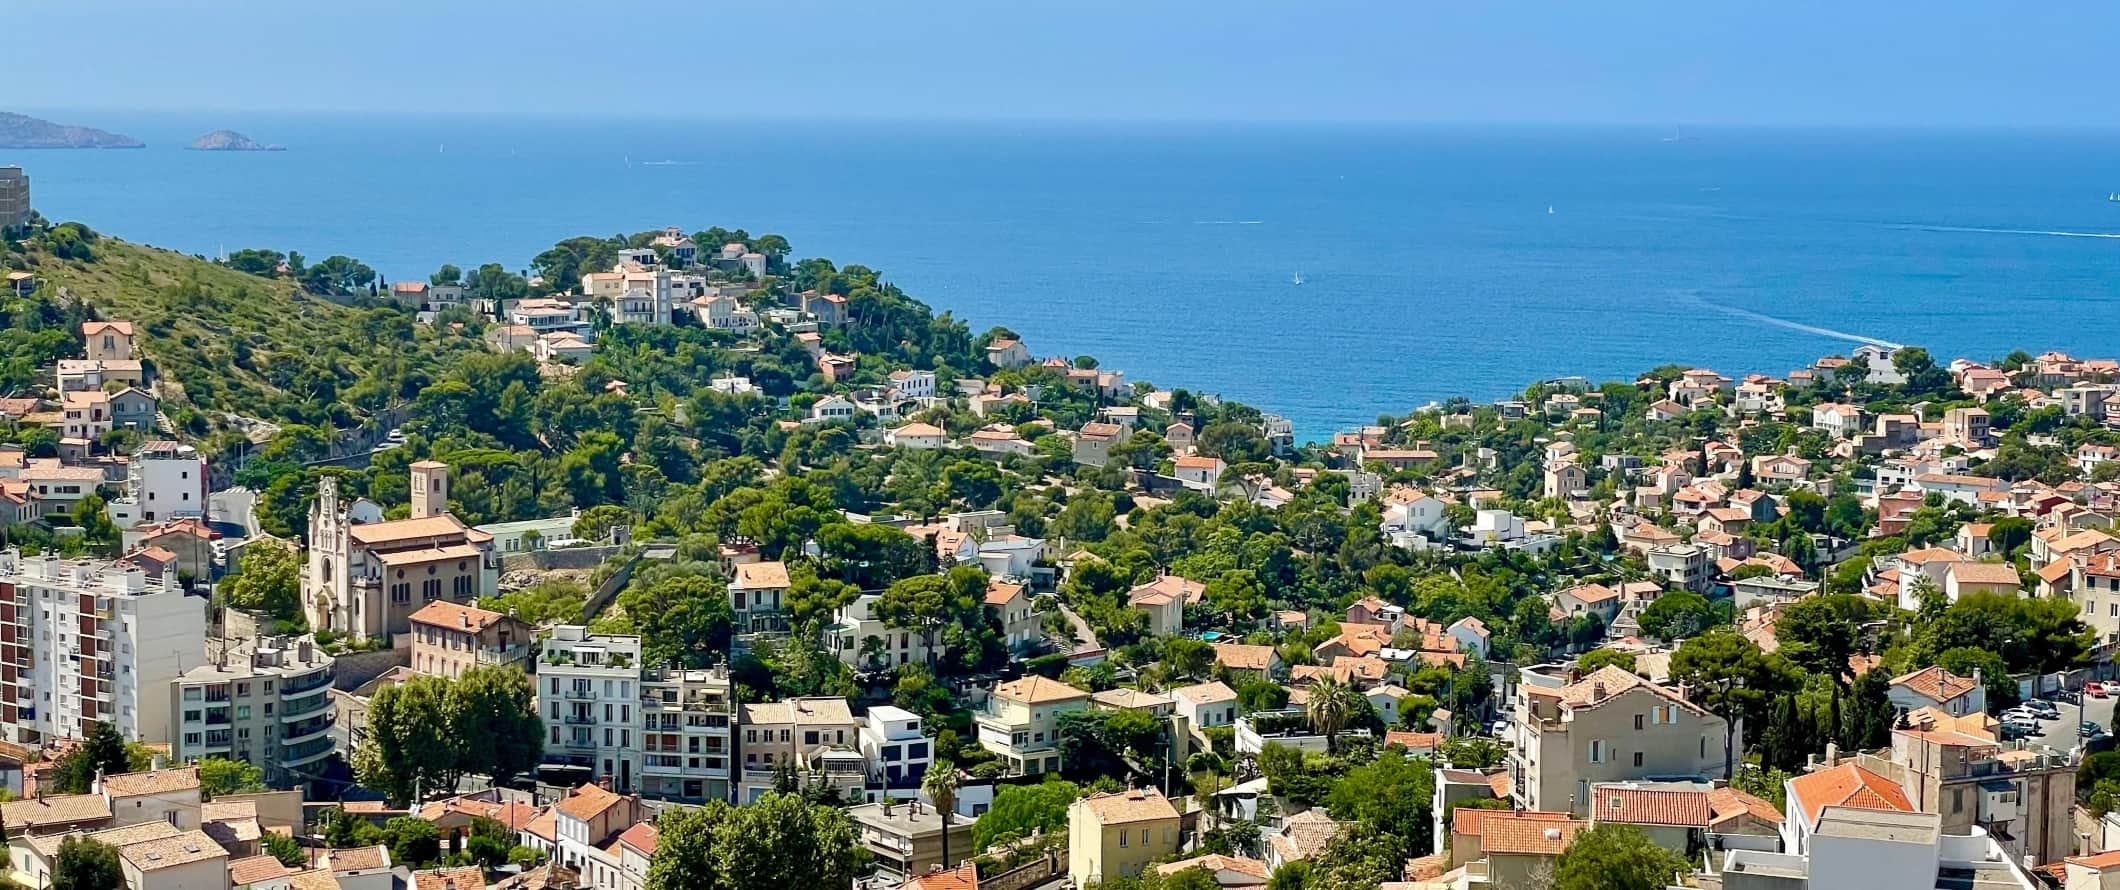 Hills da cidade de Marselha, França, contra o fundo do Oceano Mediterrâneo